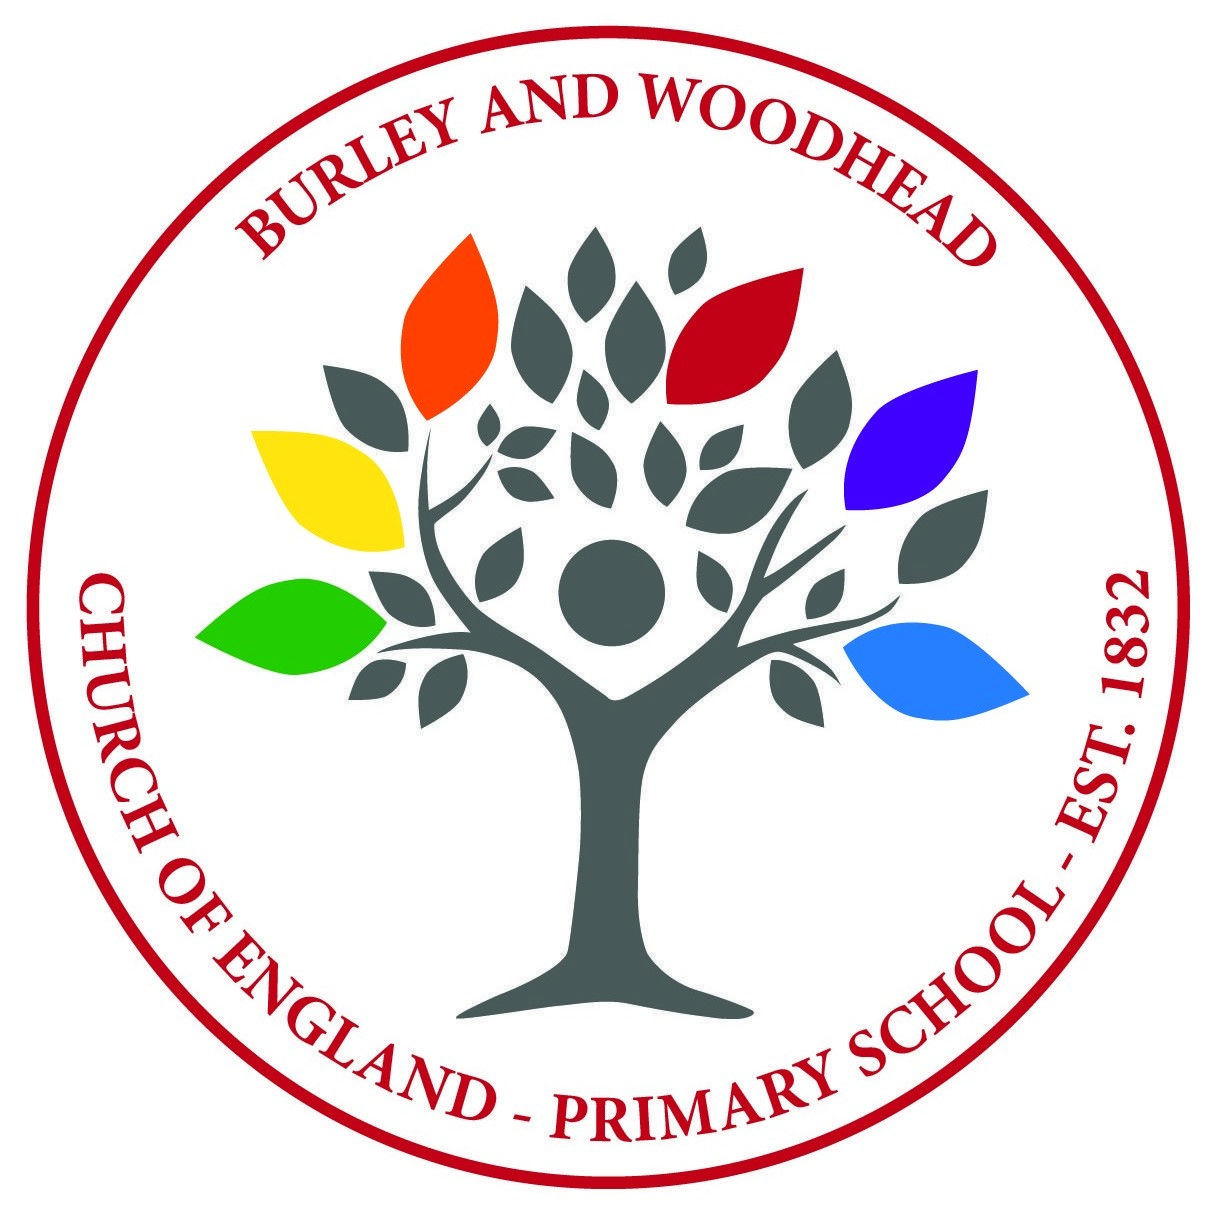 Woodhead Logo - Burley & Woodhead CE Primary School, Ilkley Finder